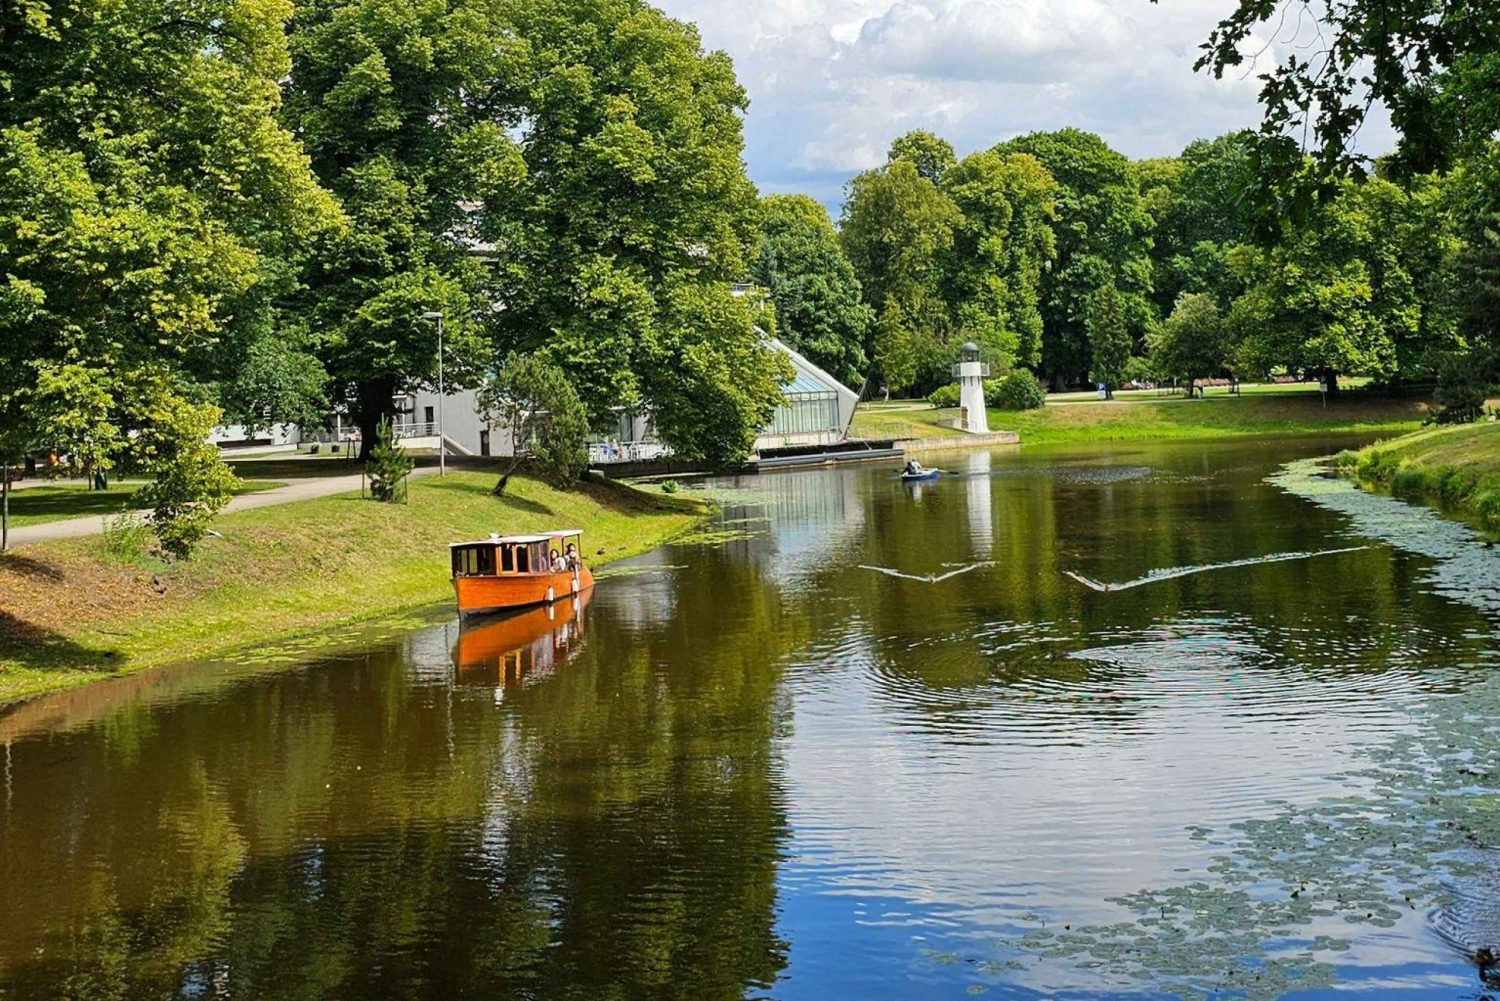 Riga: Boat tour in Canal and Daugava